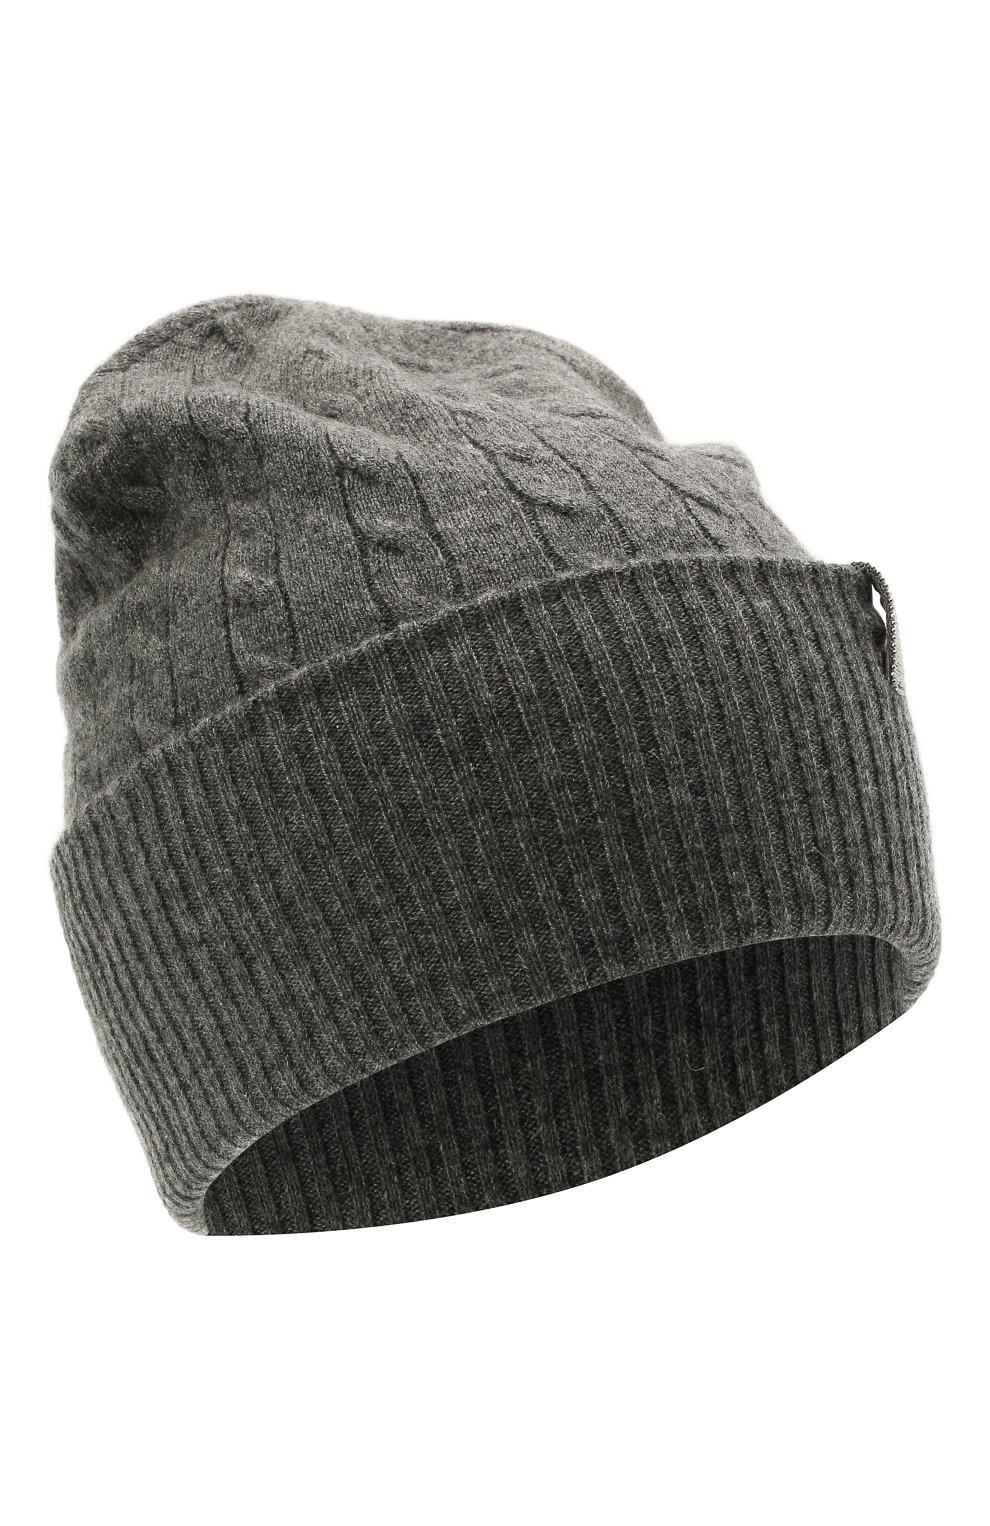 Женская кашемировая шапка BRUNELLO CUCINELLI серого цвета, арт. M12182889 | Фото 1 (Материал: Текстиль, Кашемир, Шерсть)